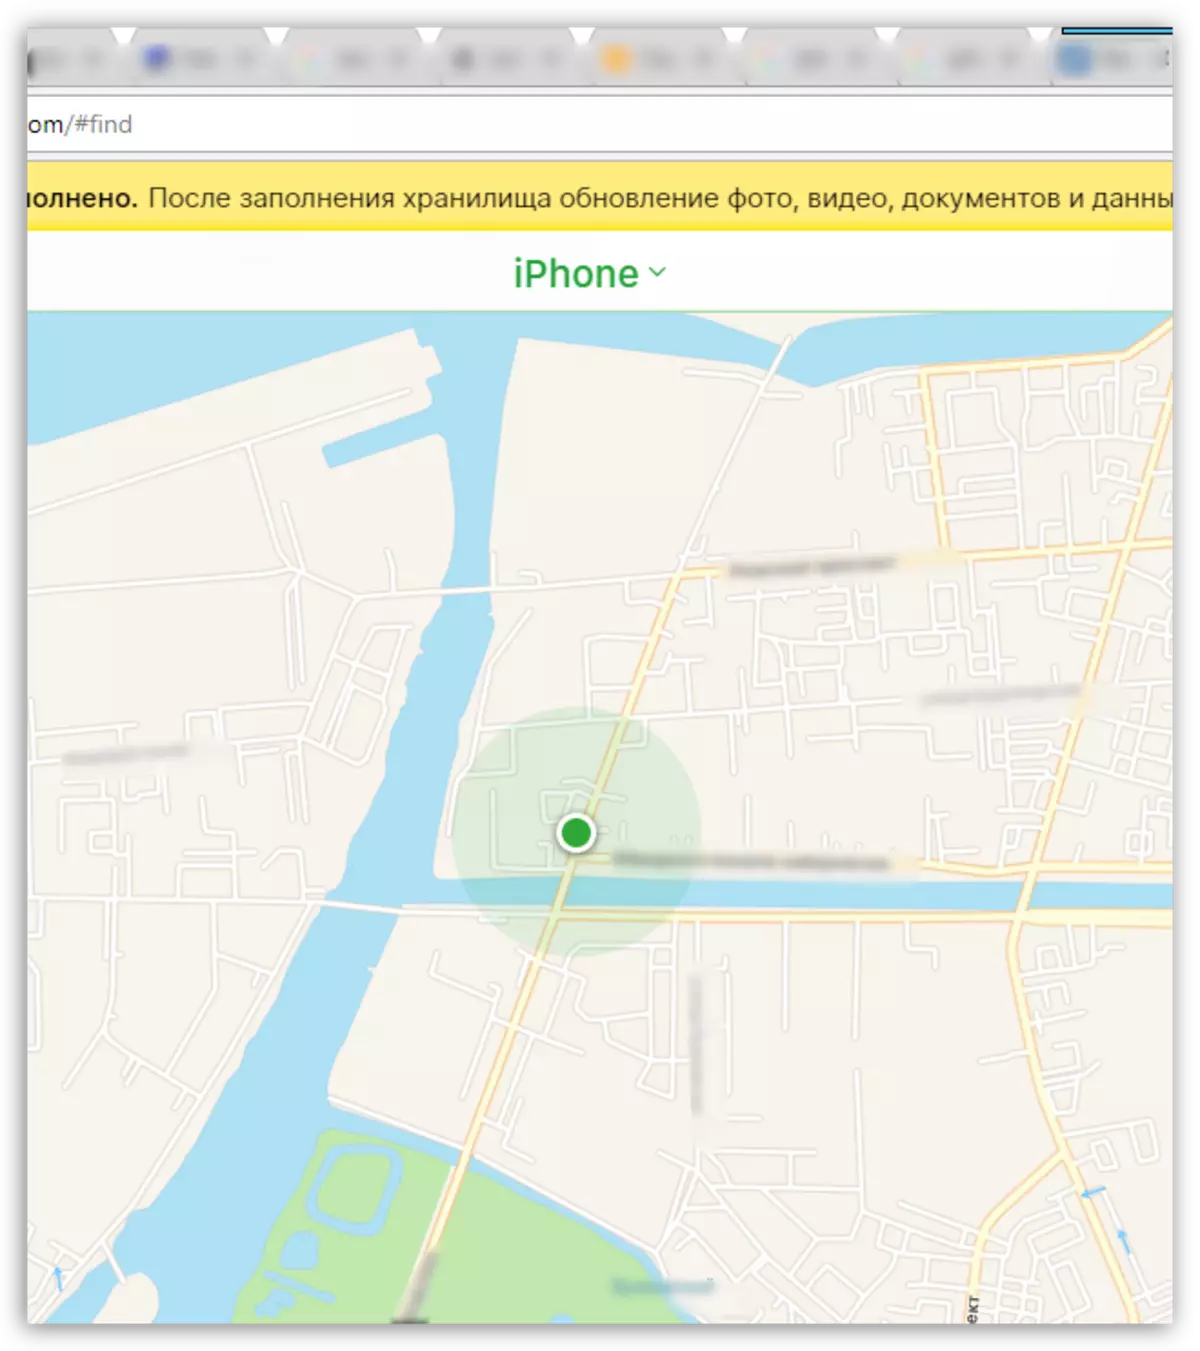 Tìm kiếm iPhone trên bản đồ qua iCloud.com